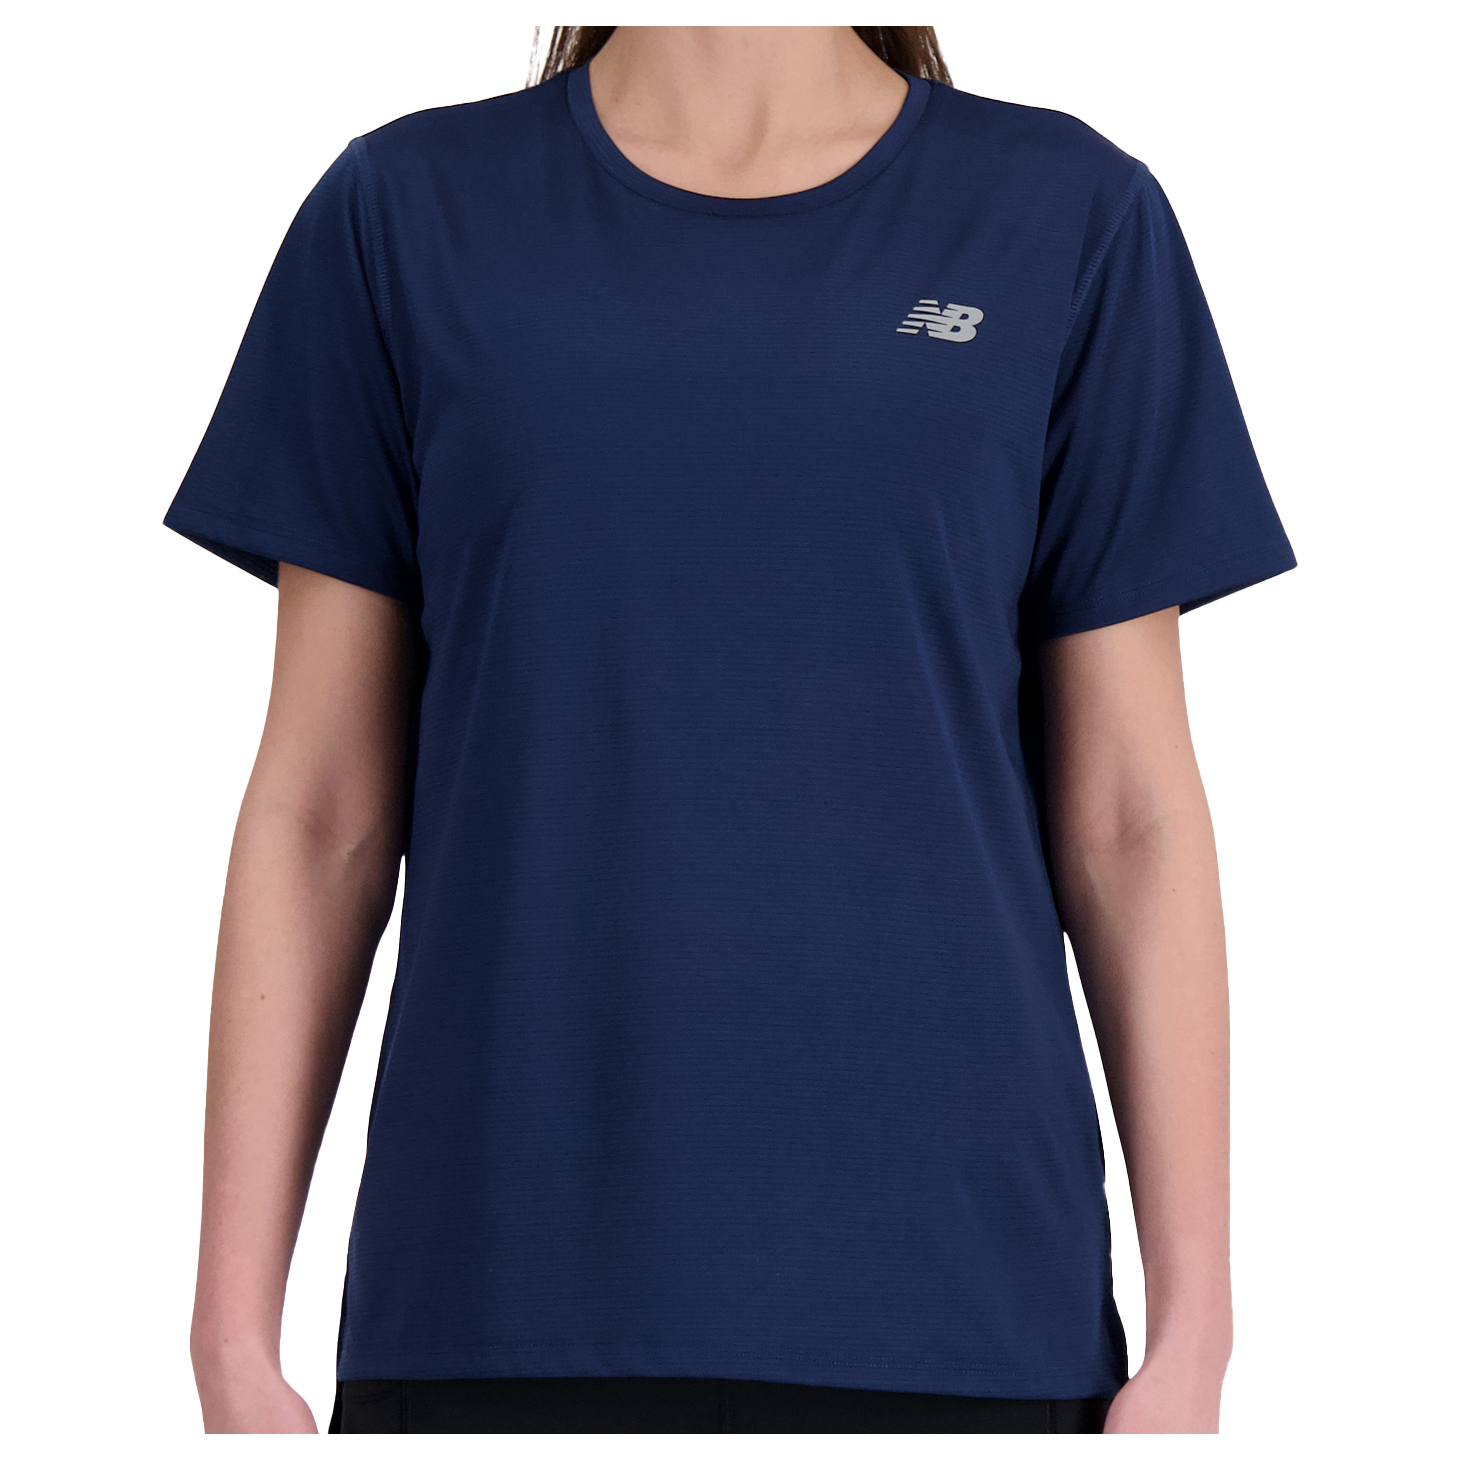 Беговая рубашка New Balance Women's Sport Essentials S/S, темно синий